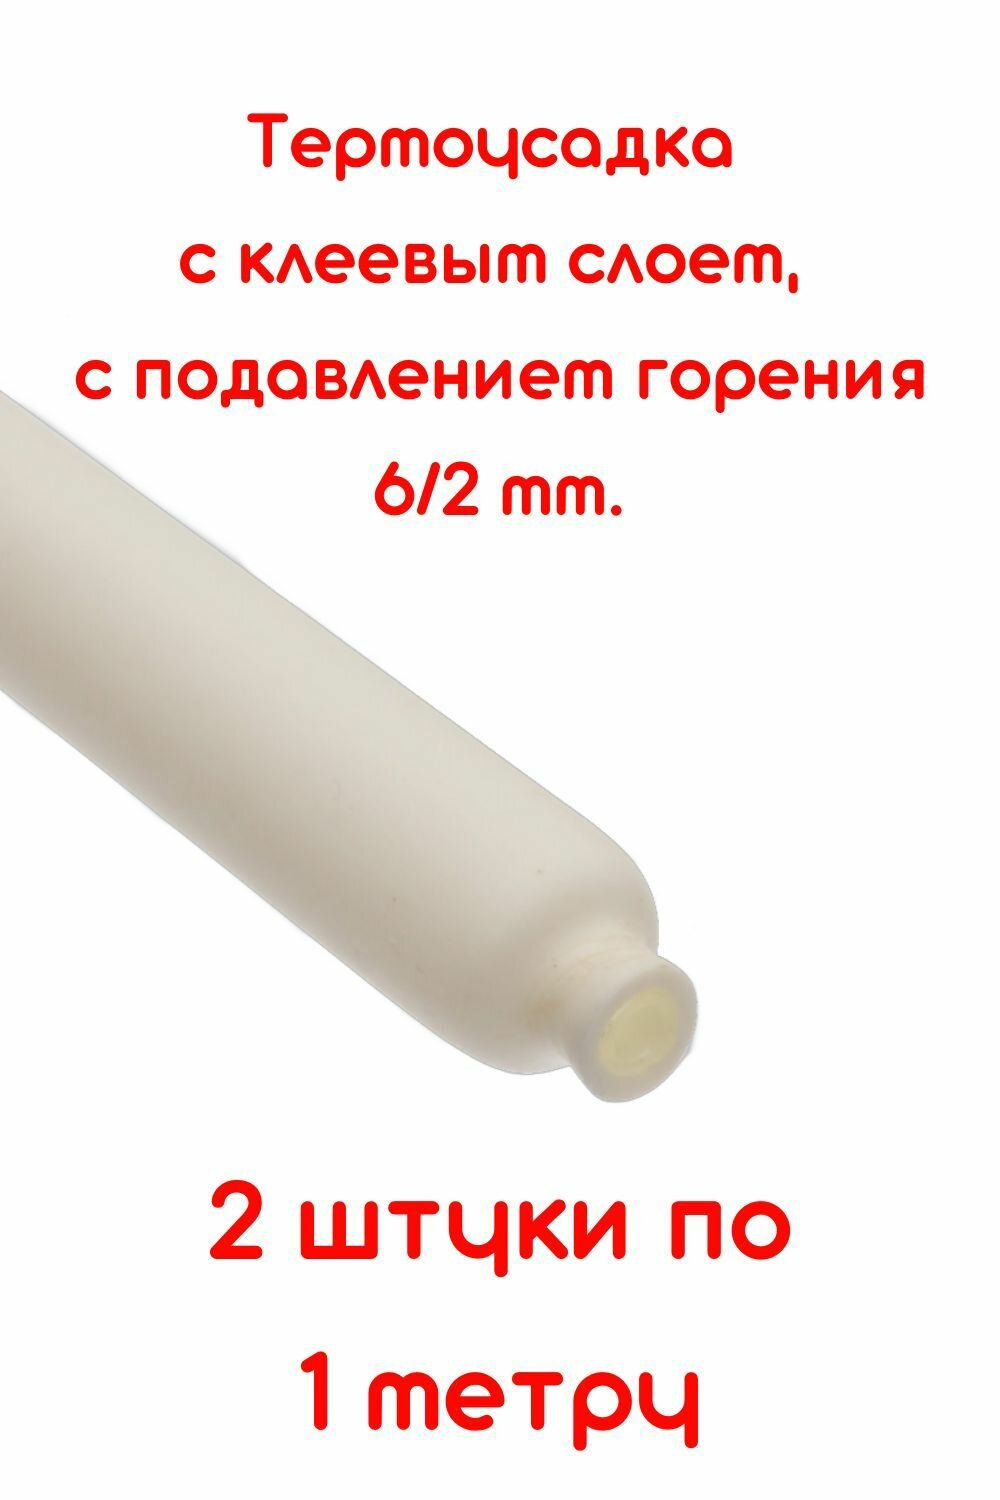 Термоусадочная трубка с клеевым слоем белая 6/2 мм 2 штуки по 1м. ТТК(3:1) с подавлением горения